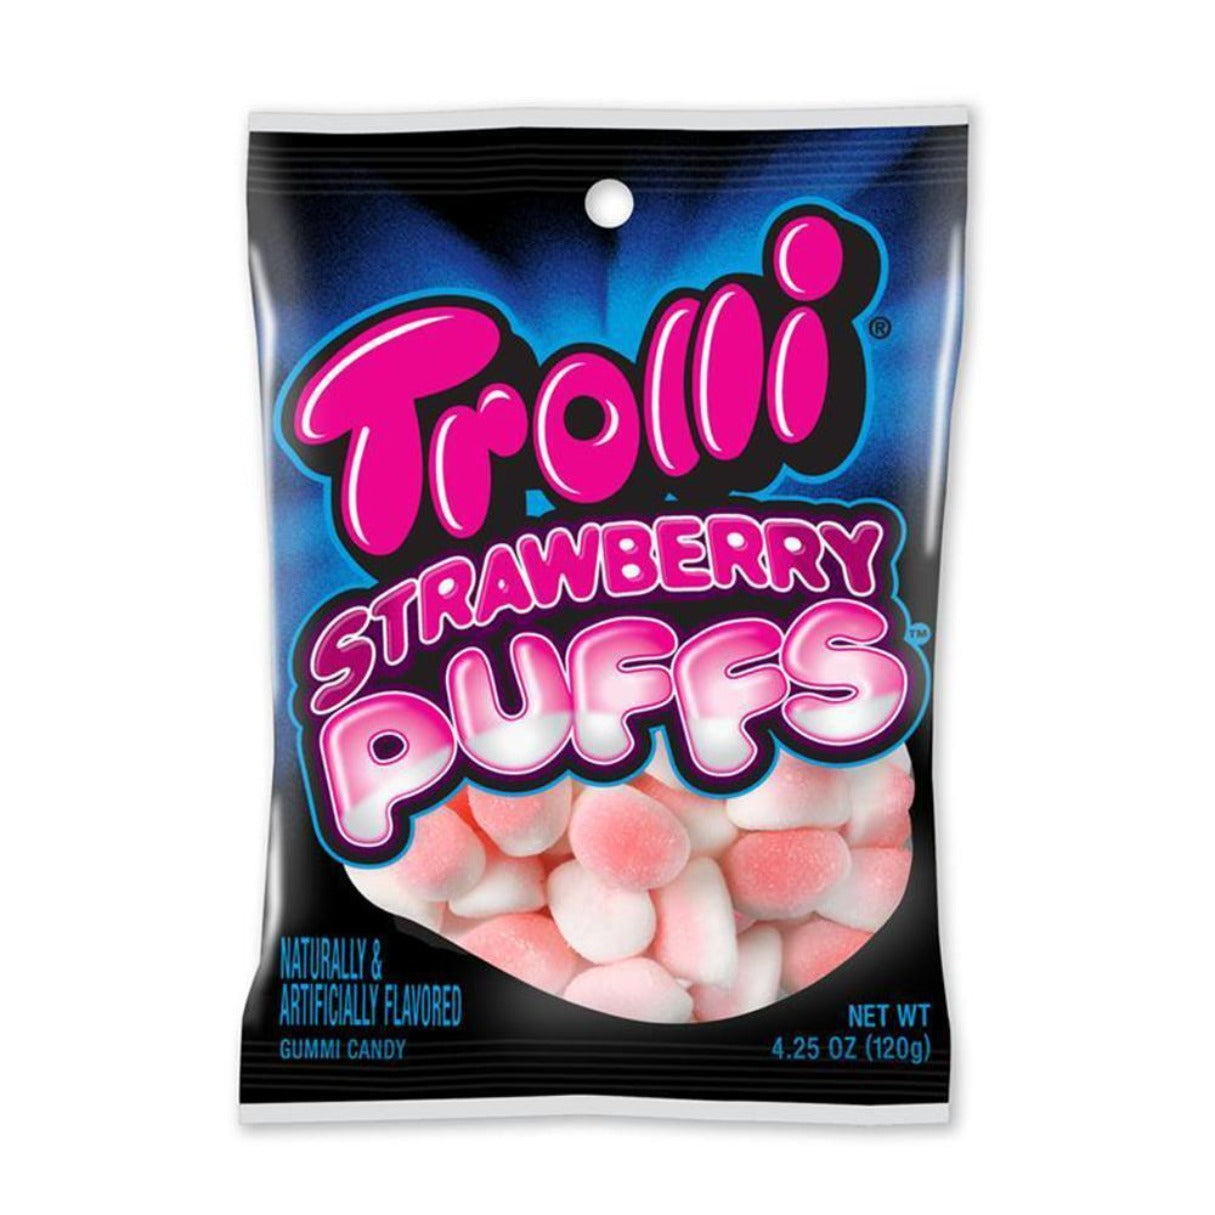 Trolli Strawberry Puffs Gummi Candy 4.25oz - 12ct